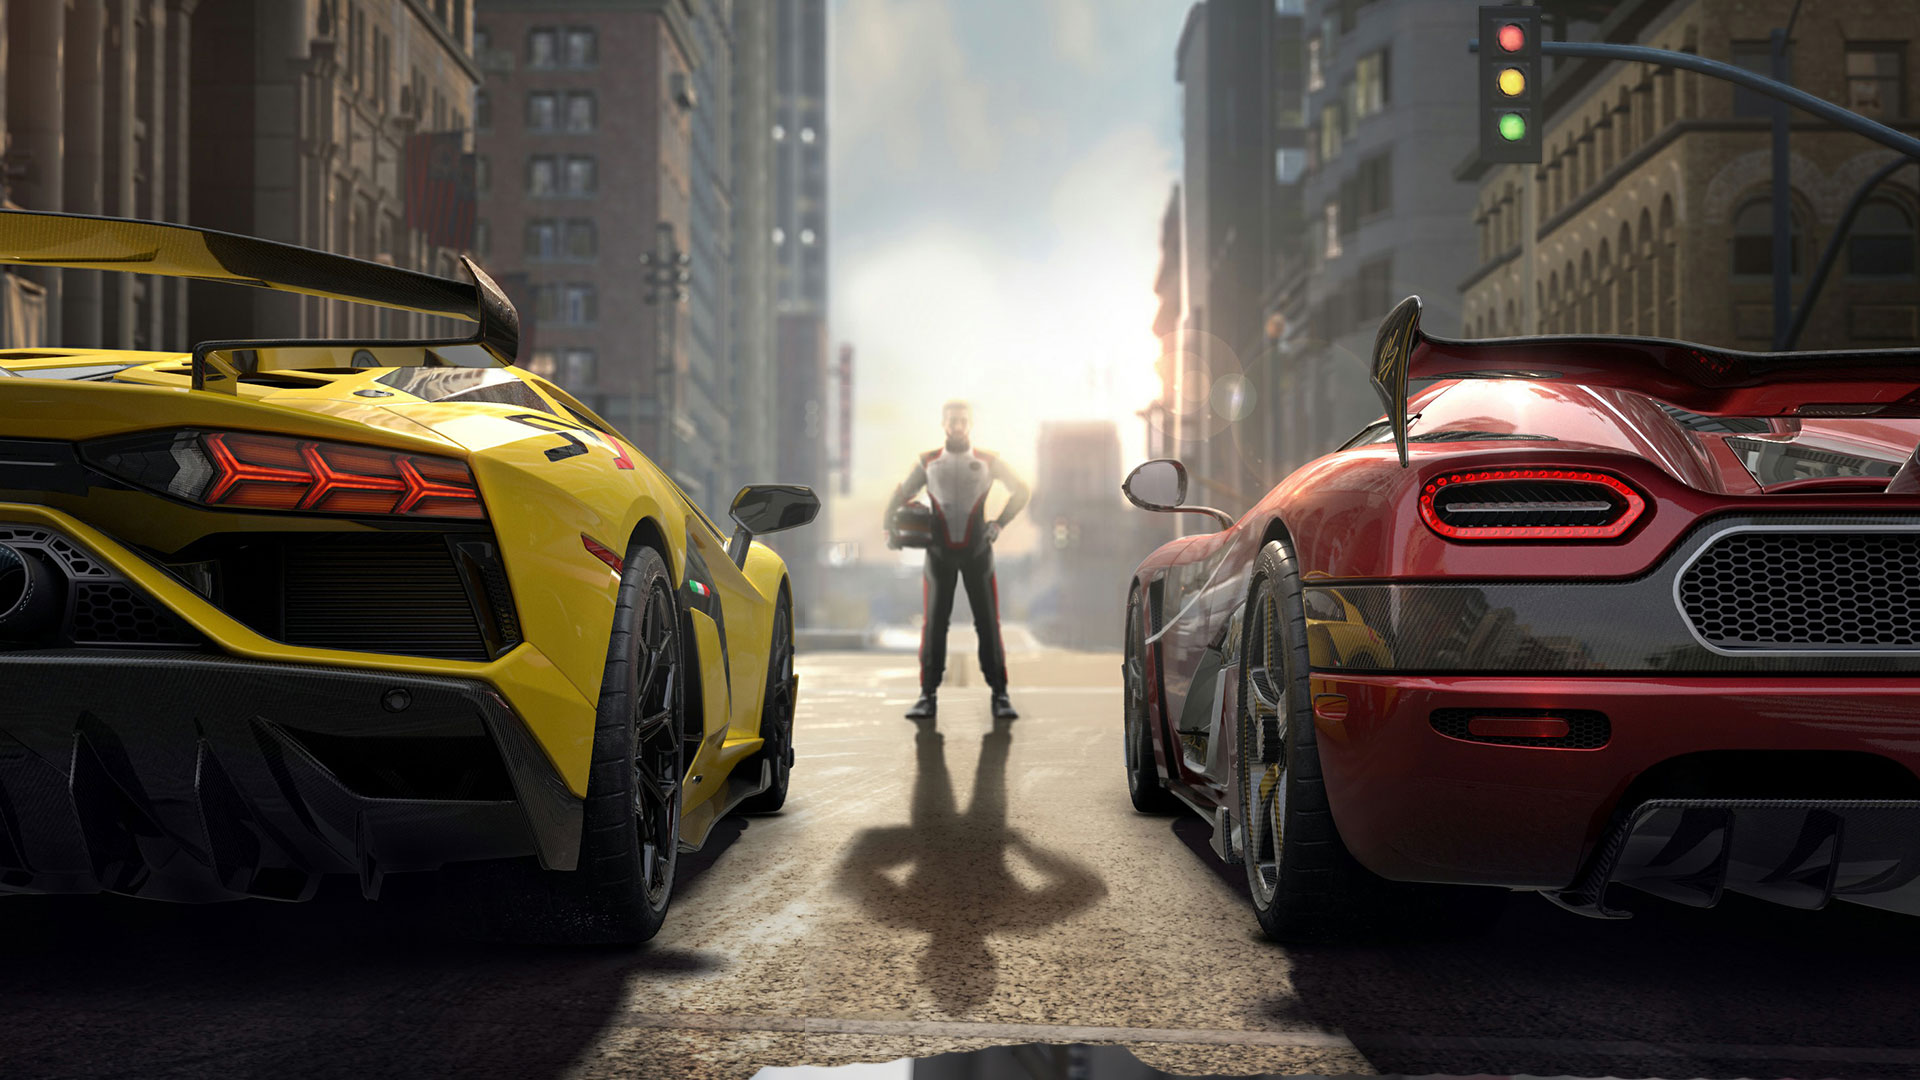 网易多平台赛车游戏《竞速大师》公布 Codemasters开发